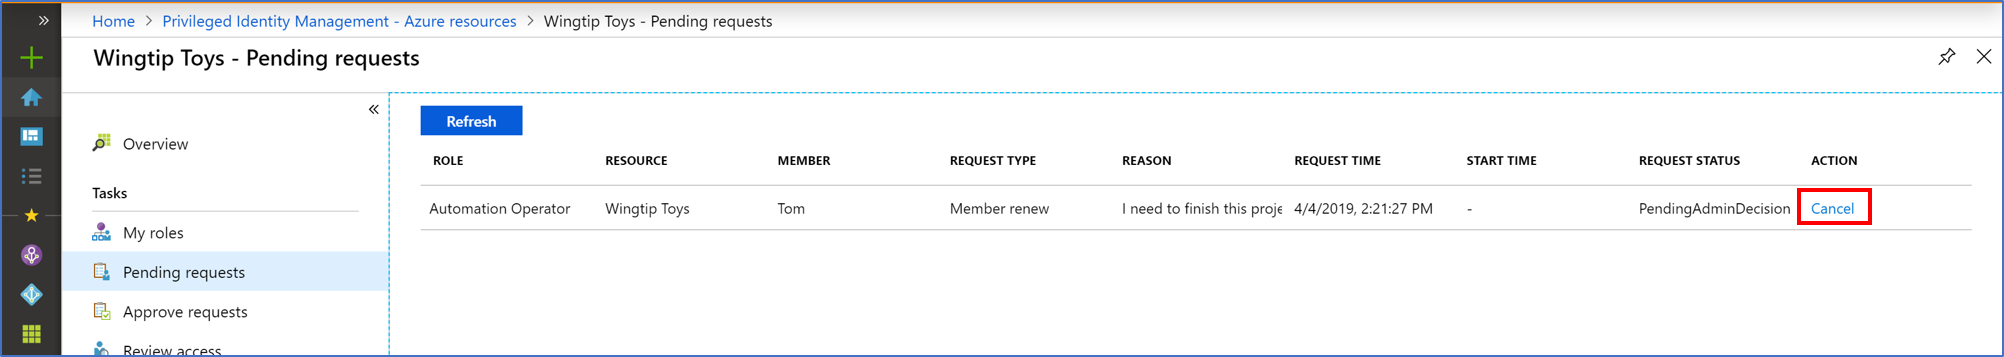 Captura de pantalla de los recursos de Azure: página de solicitudes pendiente que muestra todas las solicitudes pendientes y un vínculo para cancelarlas.